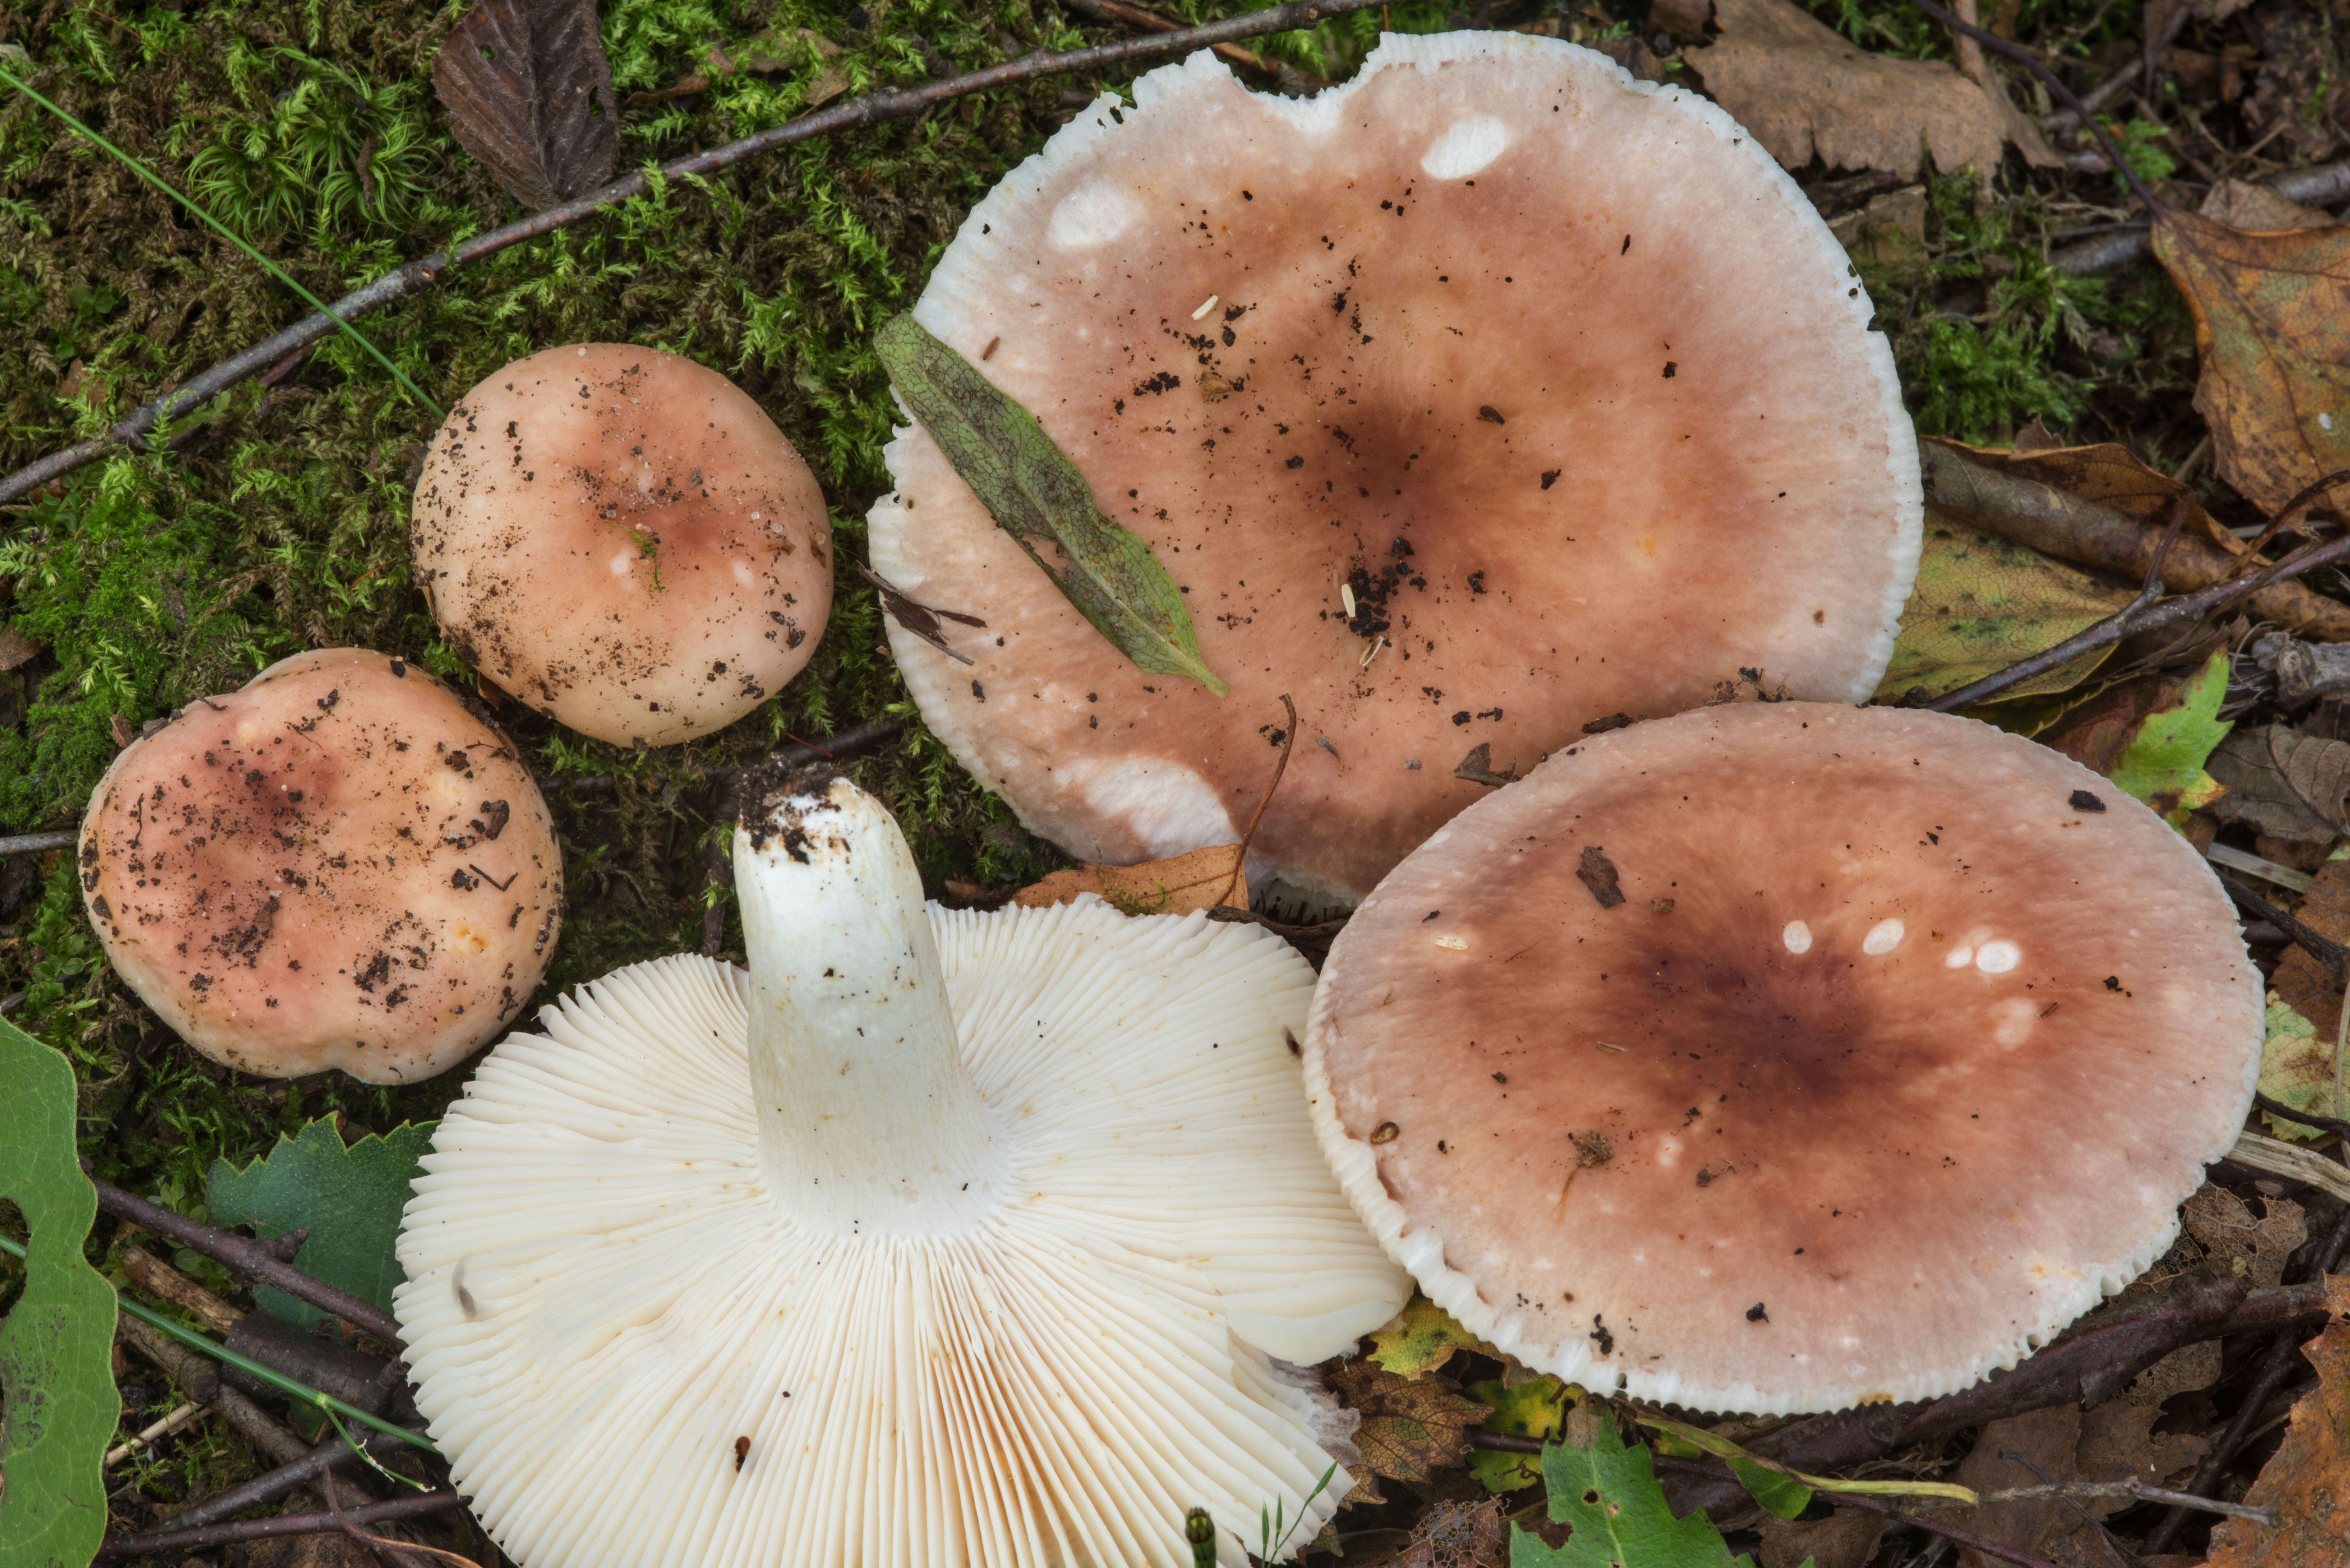 Сыроежки грибы фото съедобные и ложные фото и описание